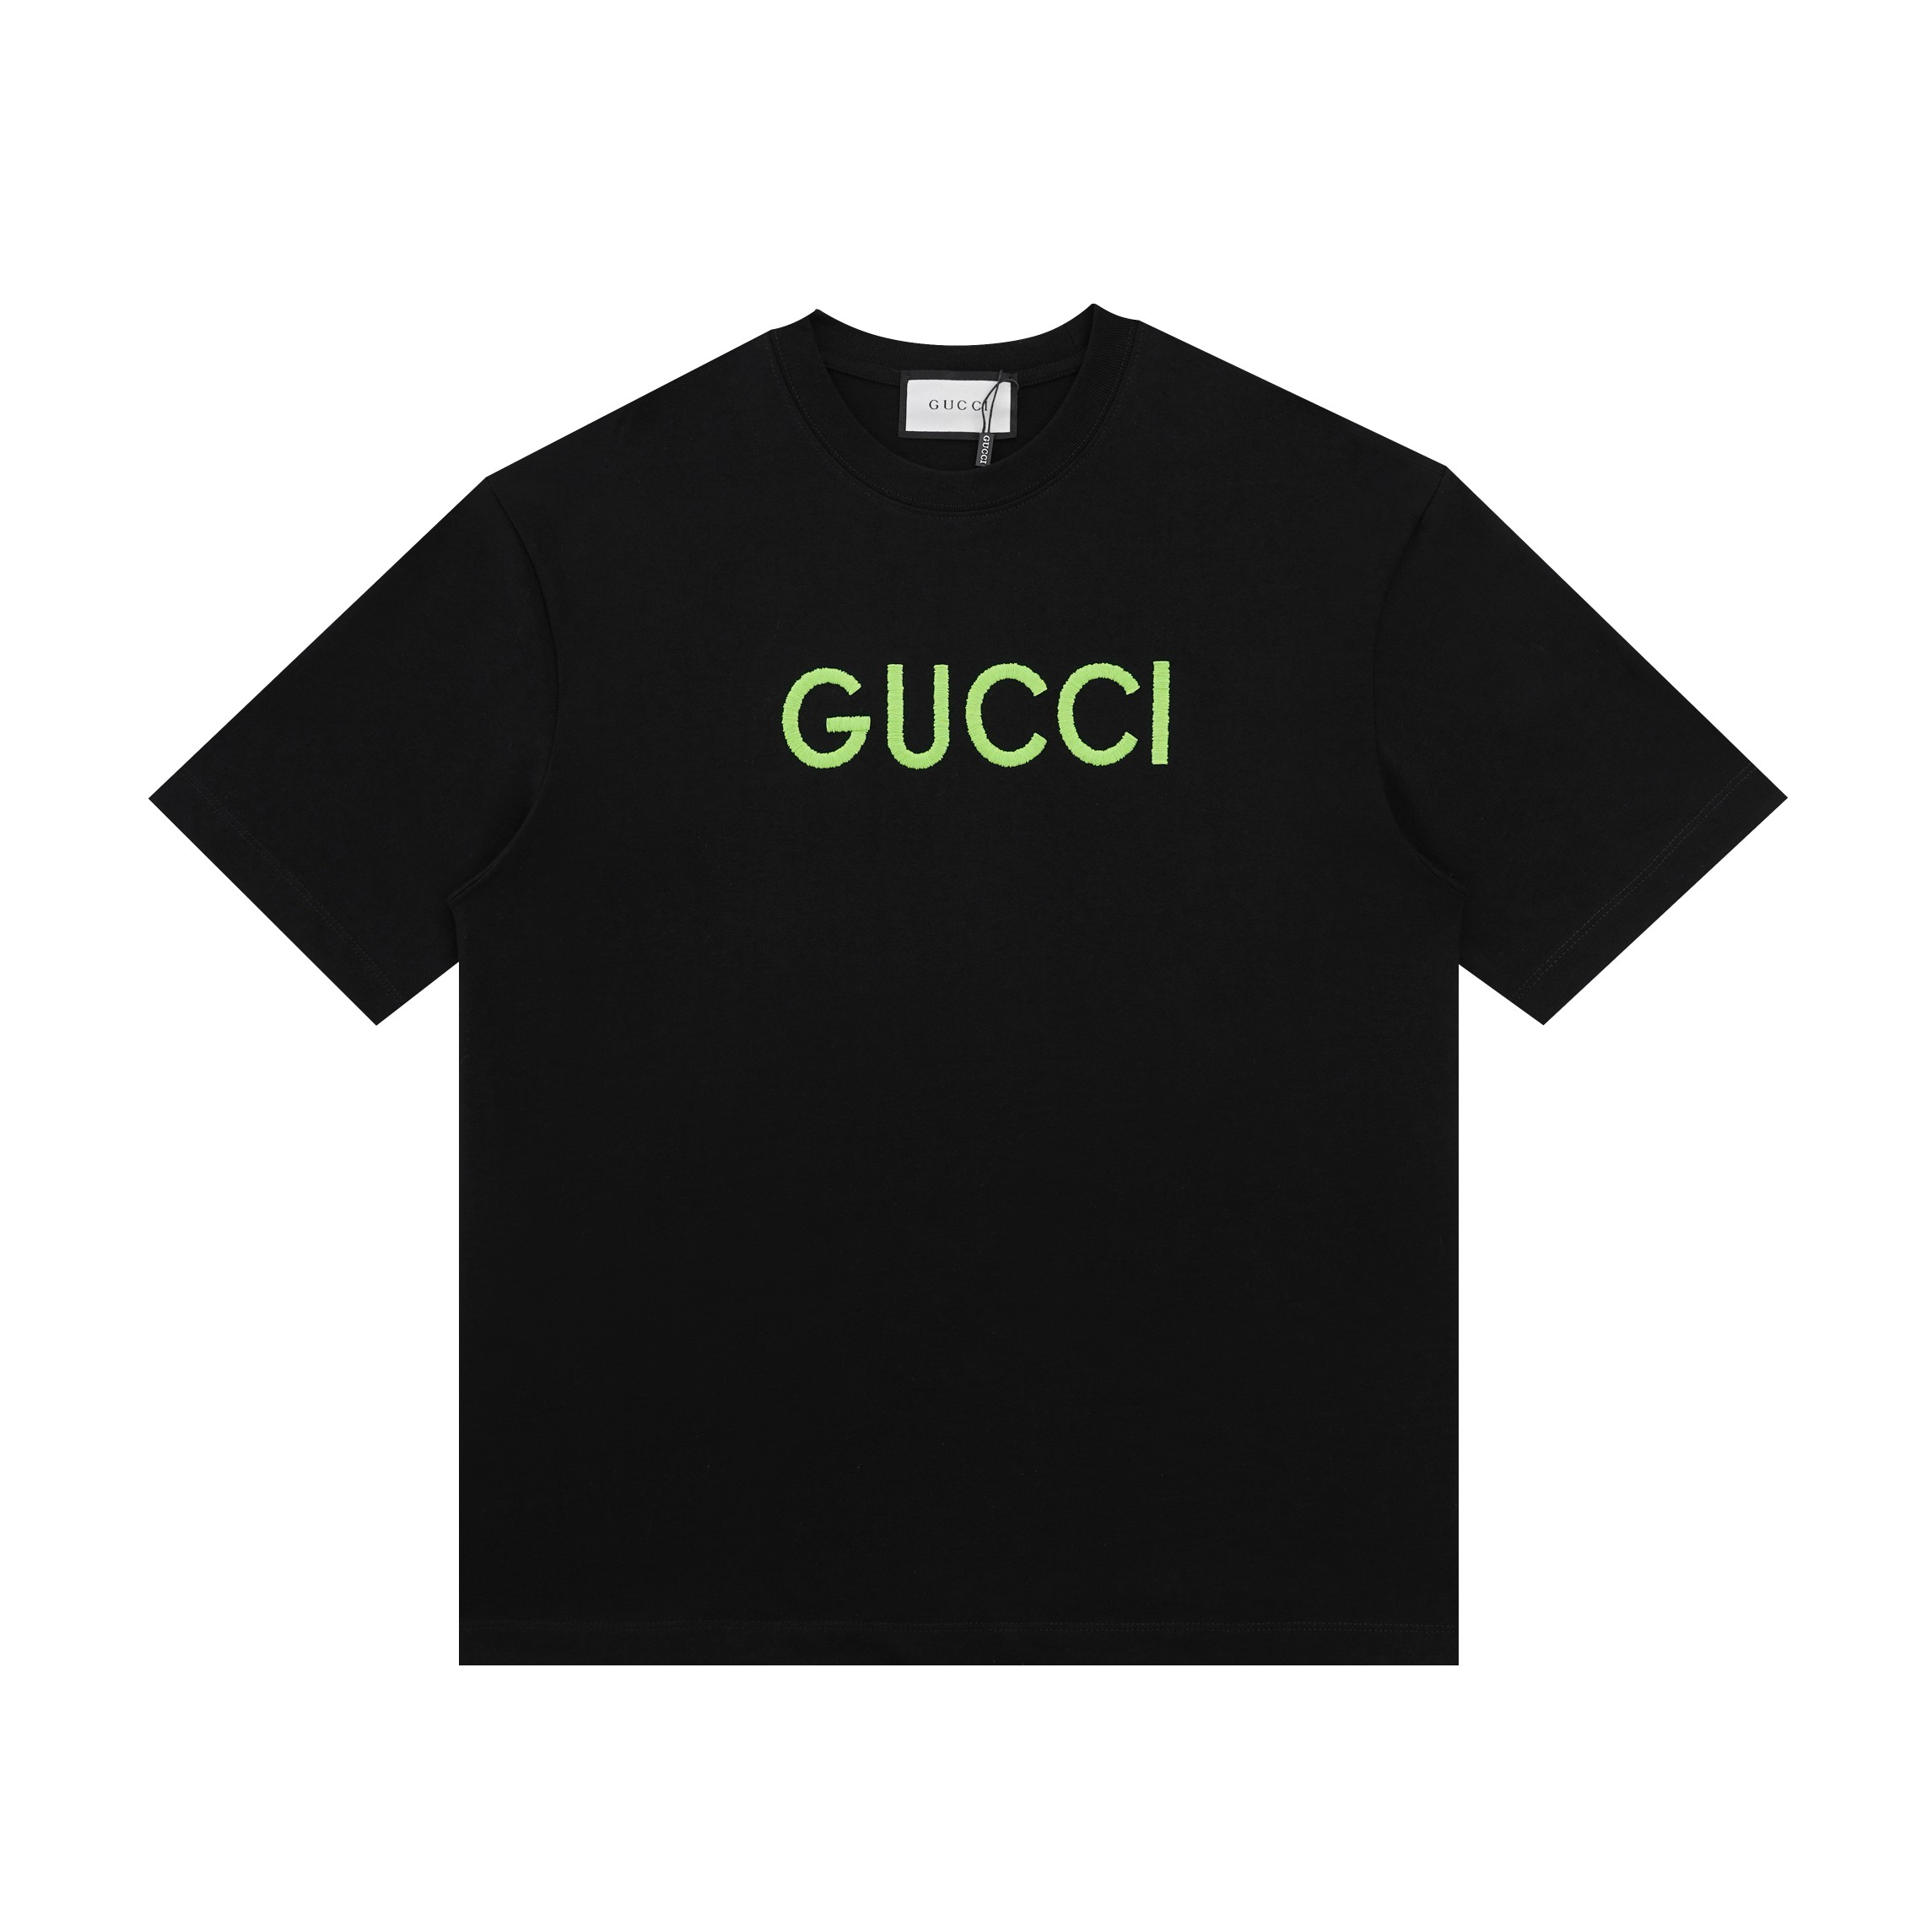 Gucci Odzież T-Shirt Czarny Bawełna czesana Krótki rękaw